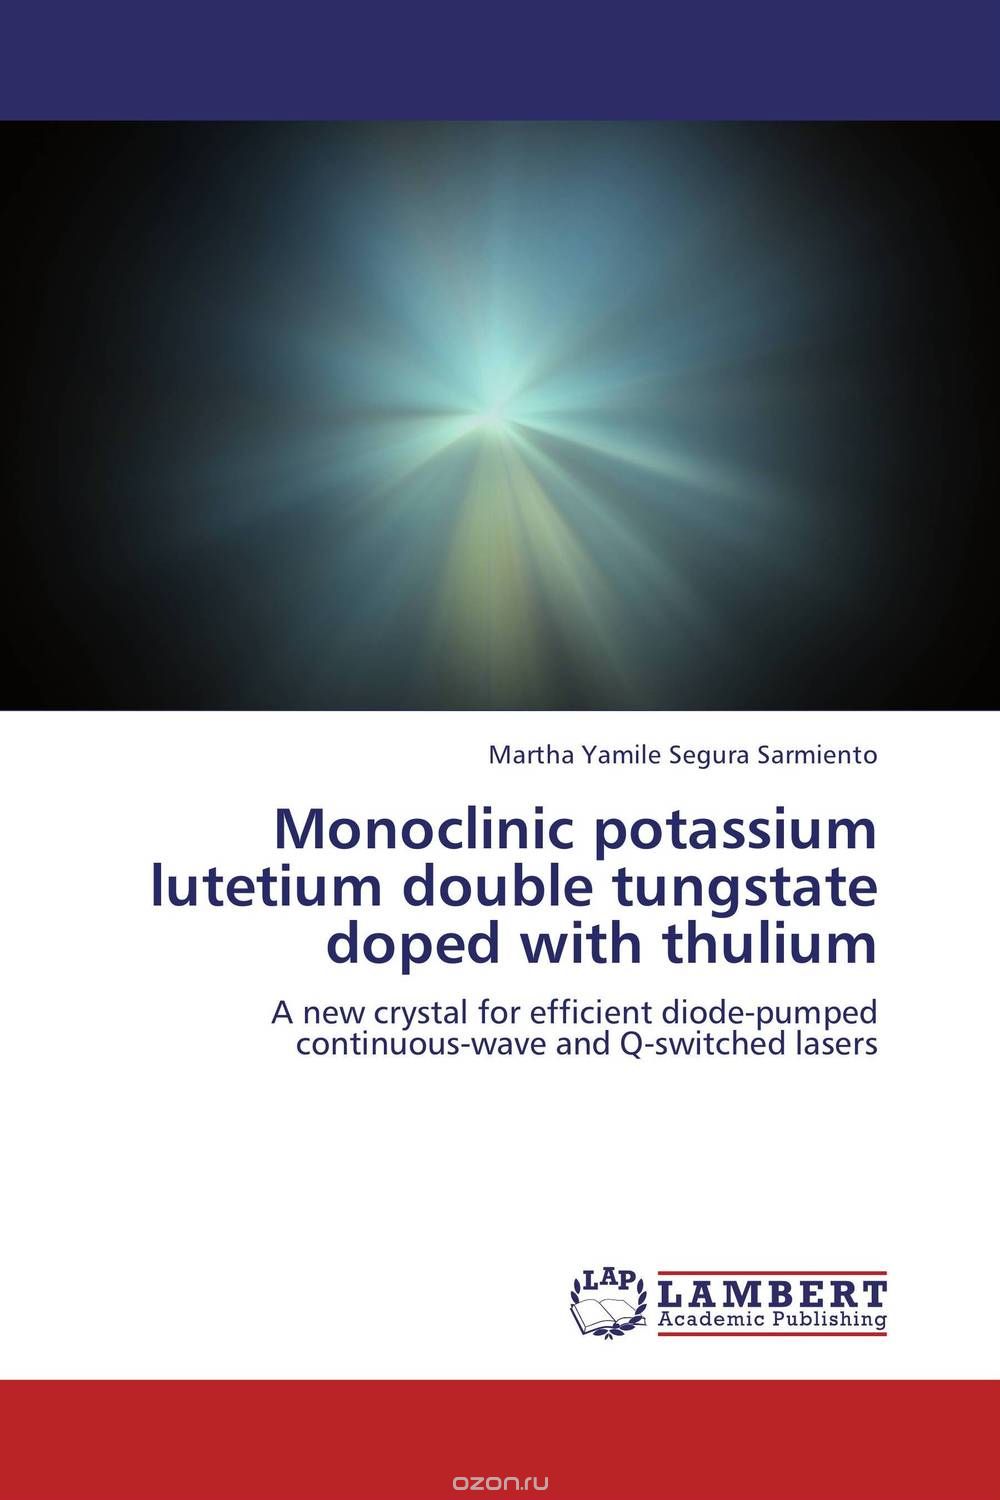 Monoclinic potassium lutetium double tungstate doped with thulium